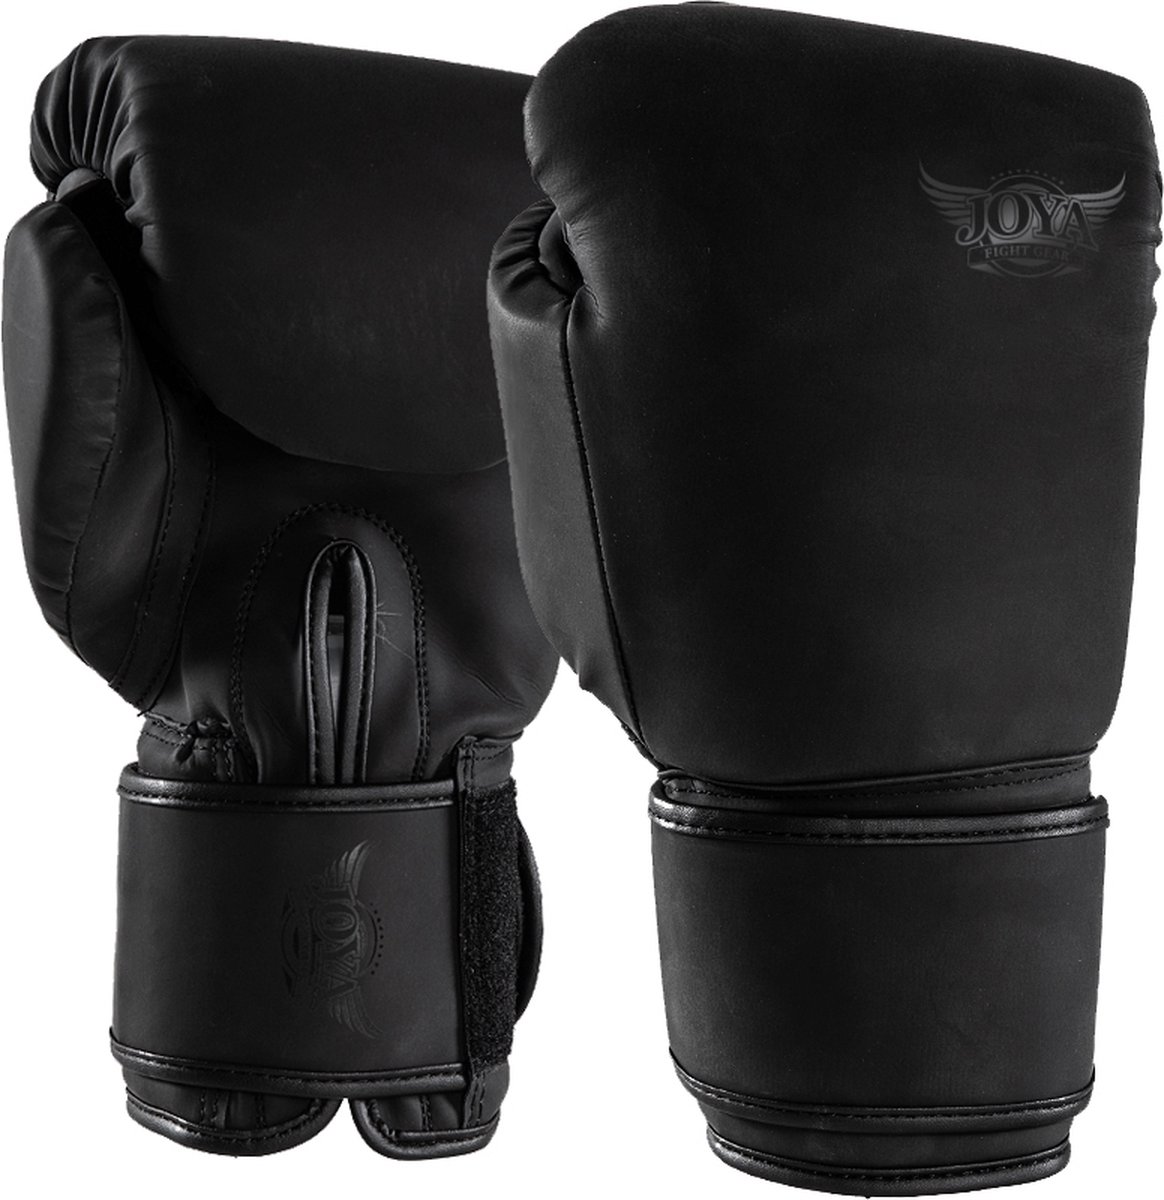 Joya Max KickBoxing Gloves Vechtsporthandschoenen - Unisex - zwart